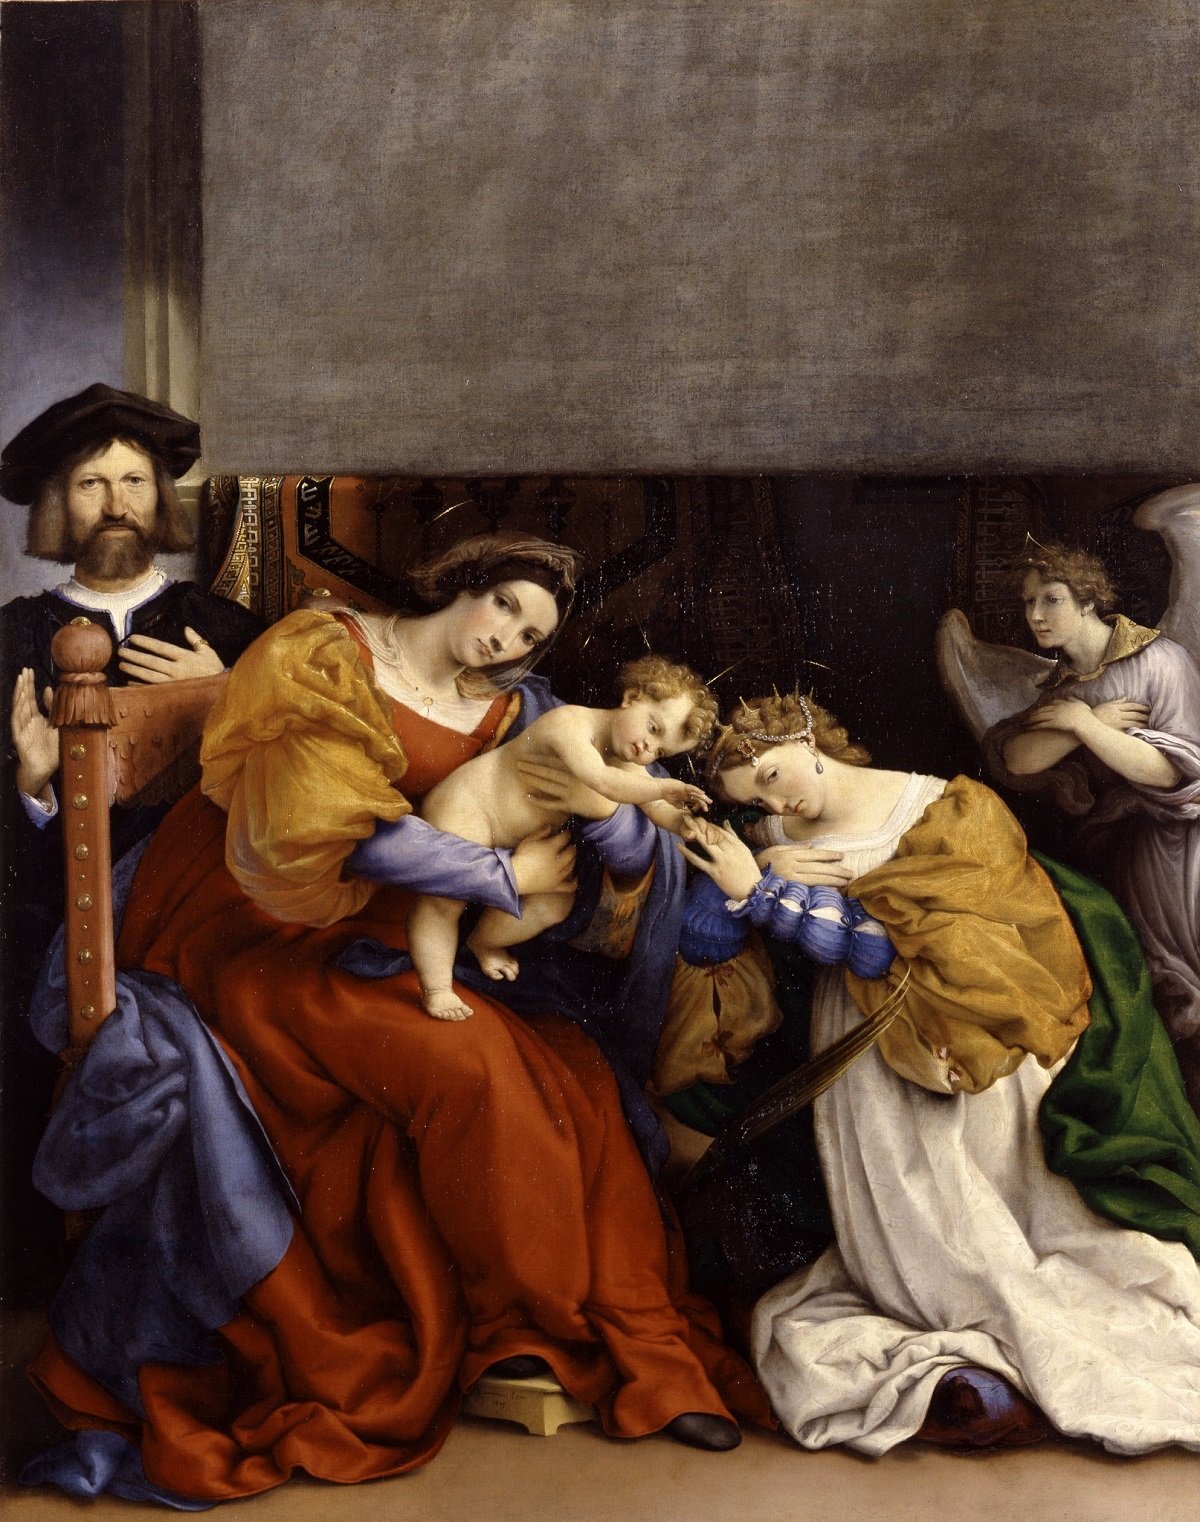 Nozze mistiche di Santa Caterina d_Alessandria e Niccolò Borghi, Lorenzo Lotto, 1523, Accademia Carrara, Bergamo